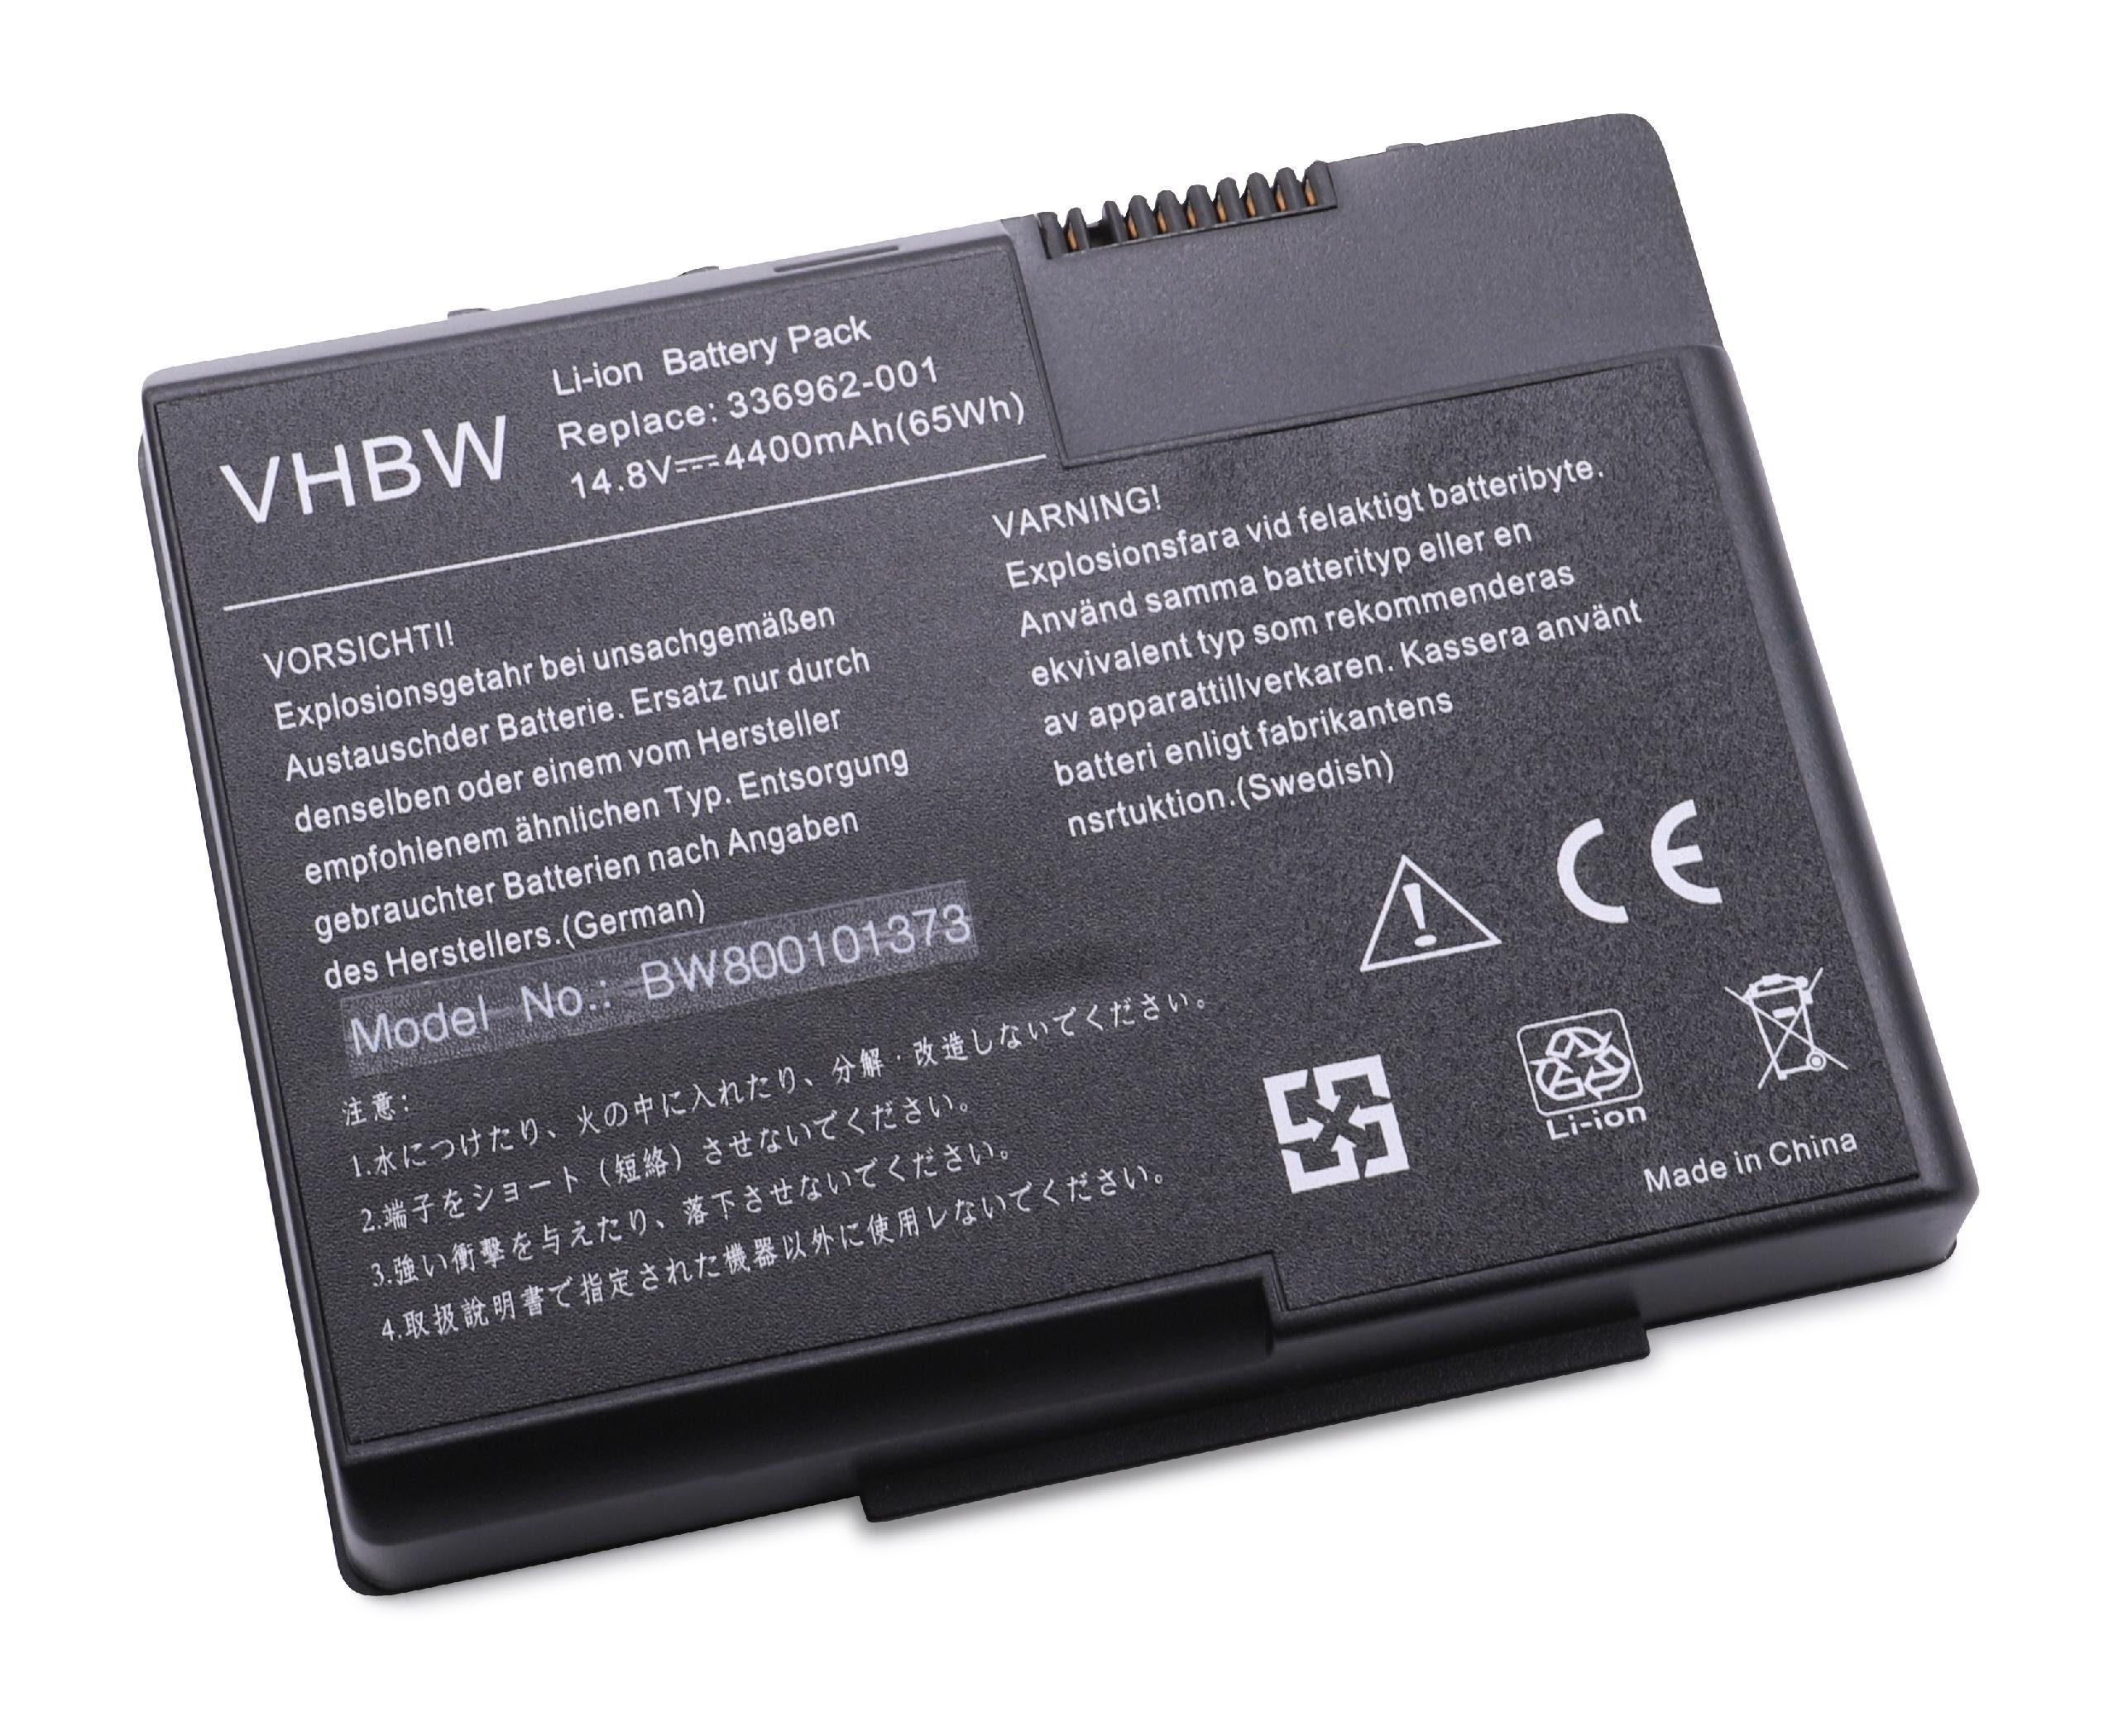 vhbw passend für HP Pavilion zt3170US (DS457UR), zt3200, zt3200 (CTO) Laptop-Akku 4400 mAh